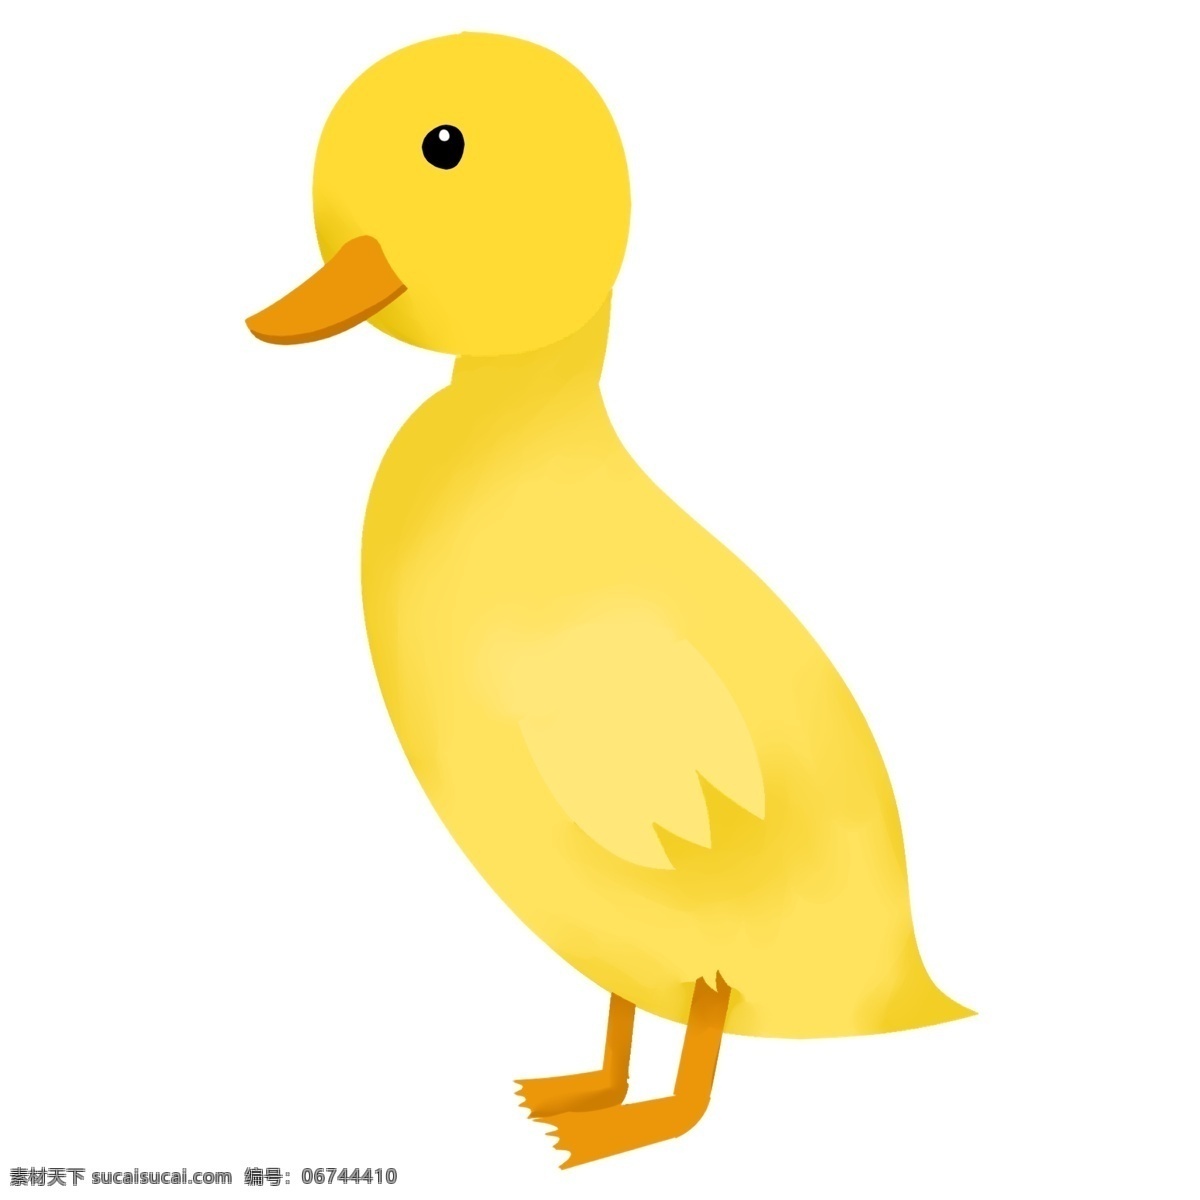 黄色 小 鸭子 手绘 插画 黄色的小鸭子 手绘小鸭子 可爱的小鸭子 漂亮的小鸭子 萌萌的小鸭子 宠物小鸭子